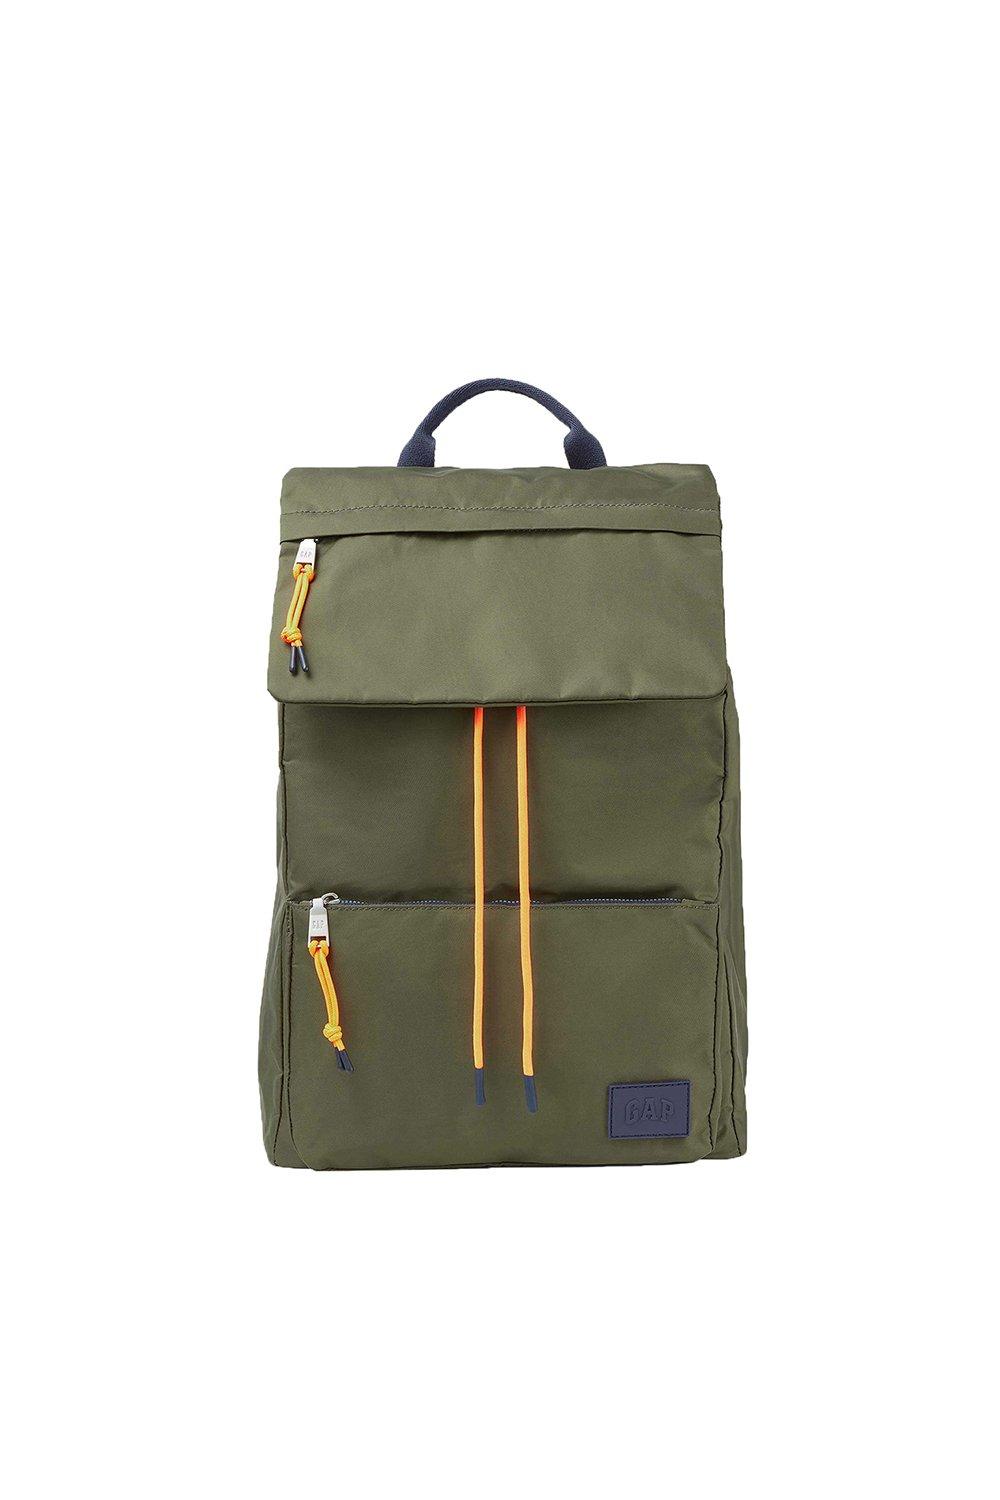 Большой рюкзак Forrest GAP, зеленый цена и фото